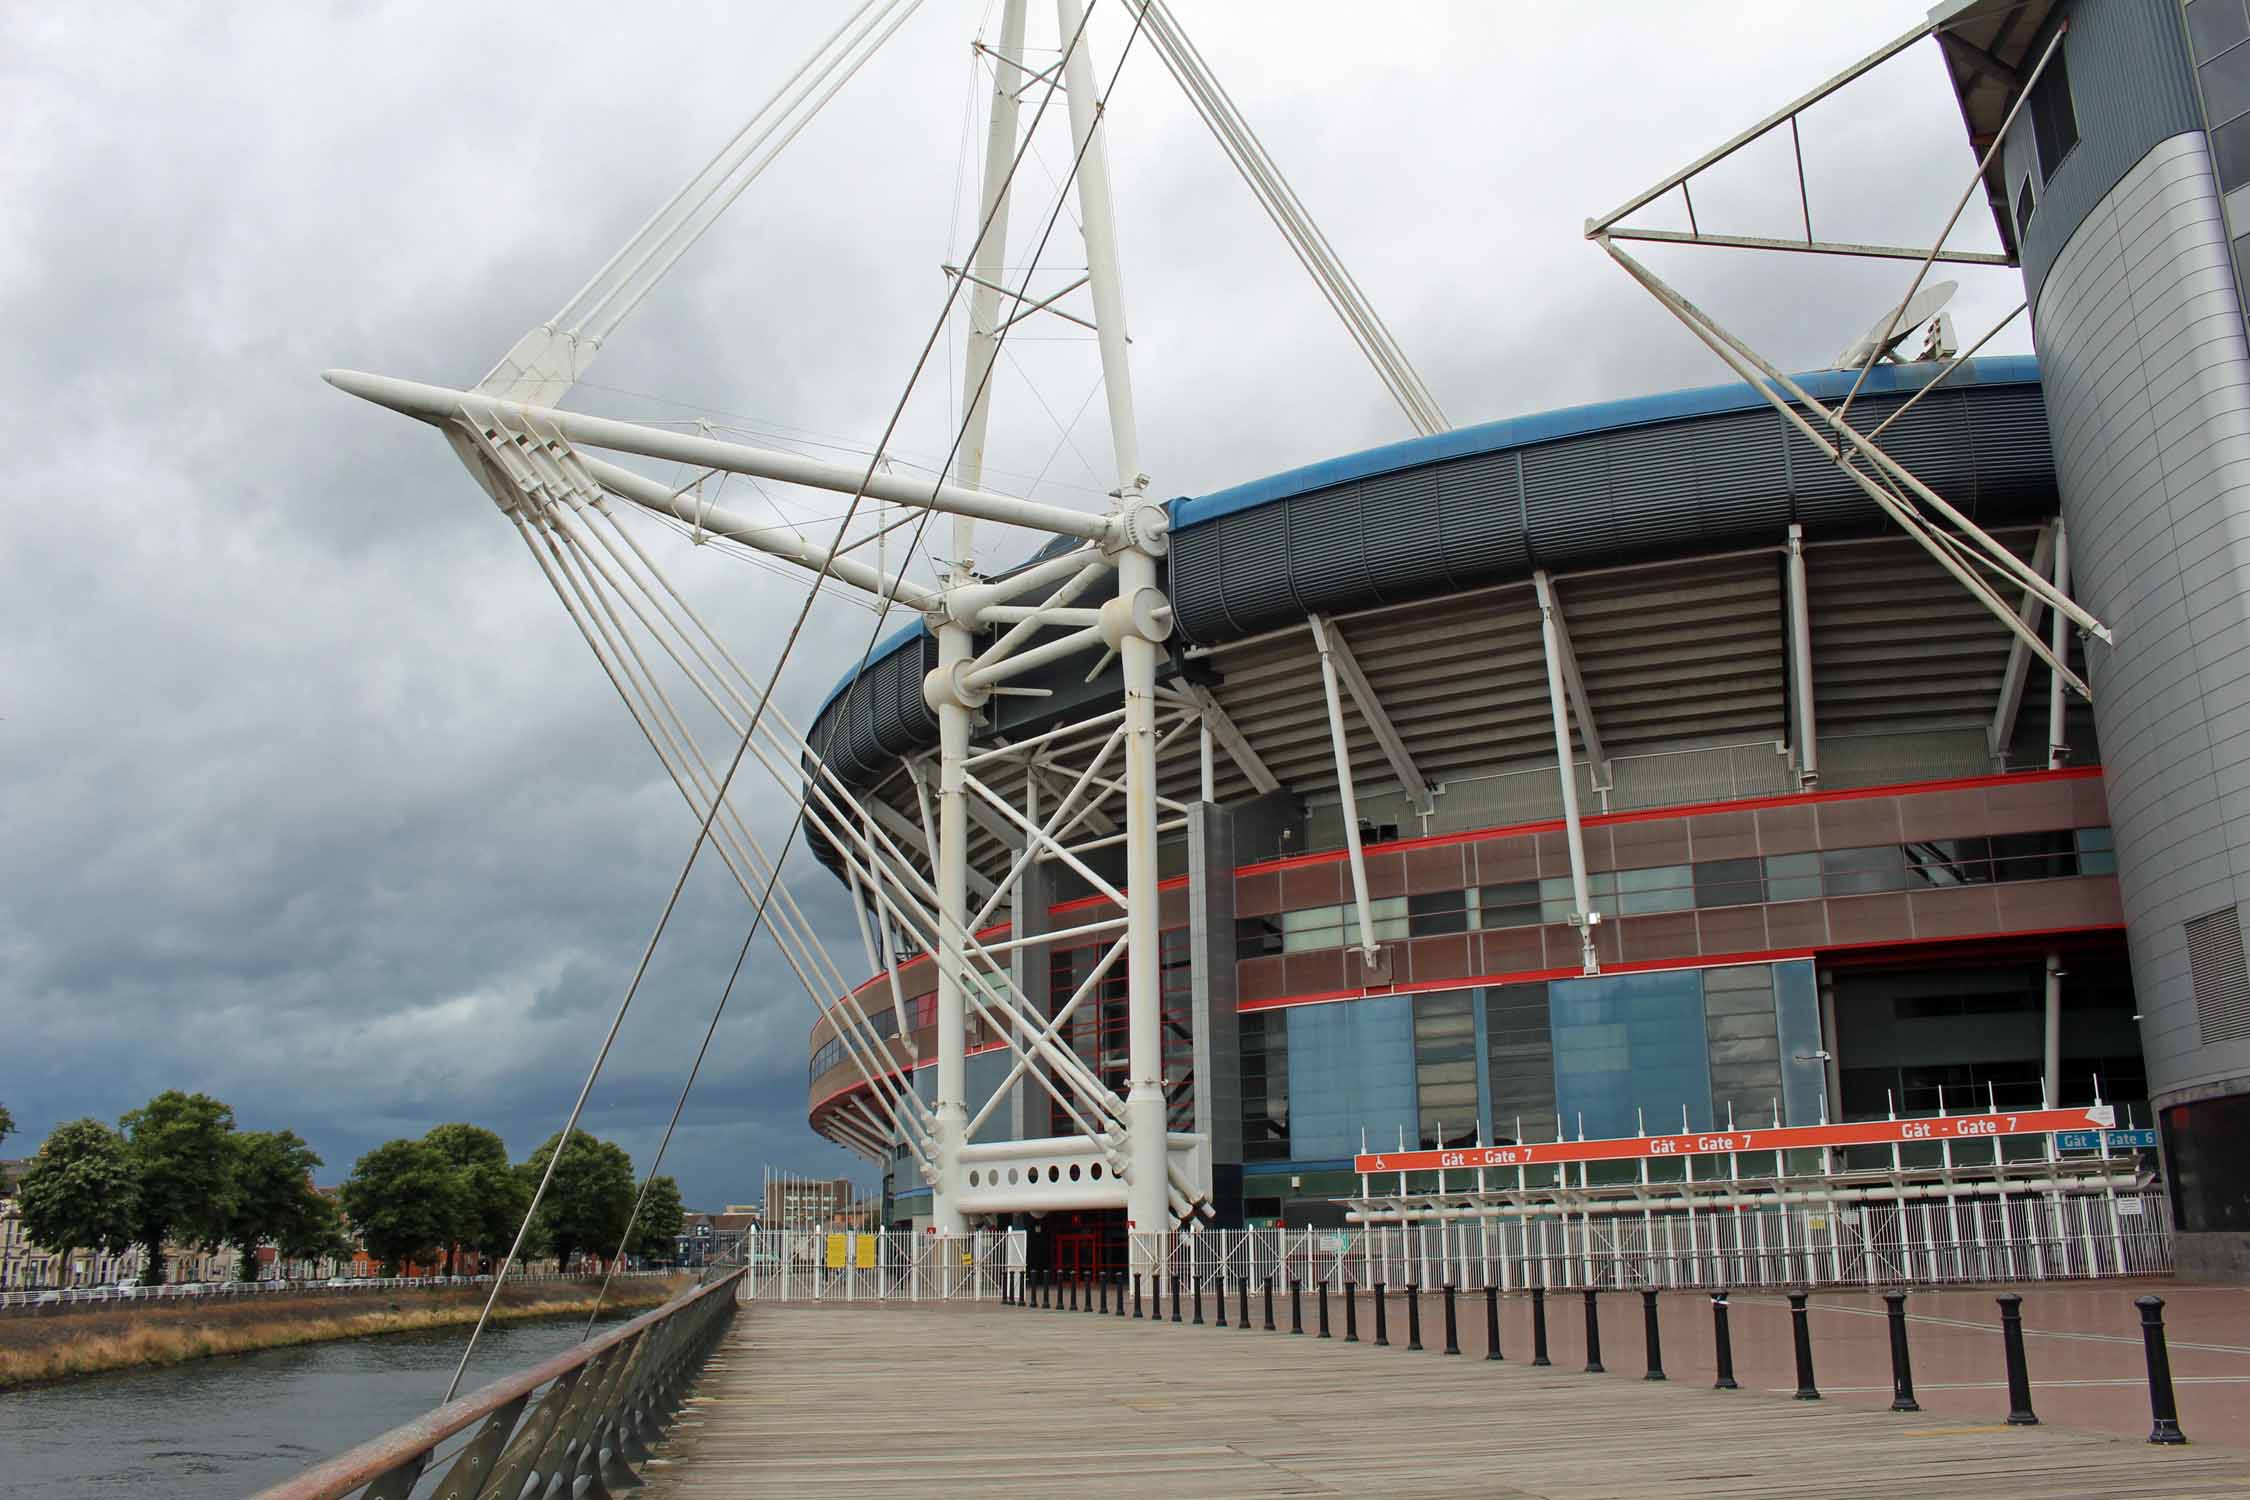 Pays de Galles, Cardiff, Millenium Stadium